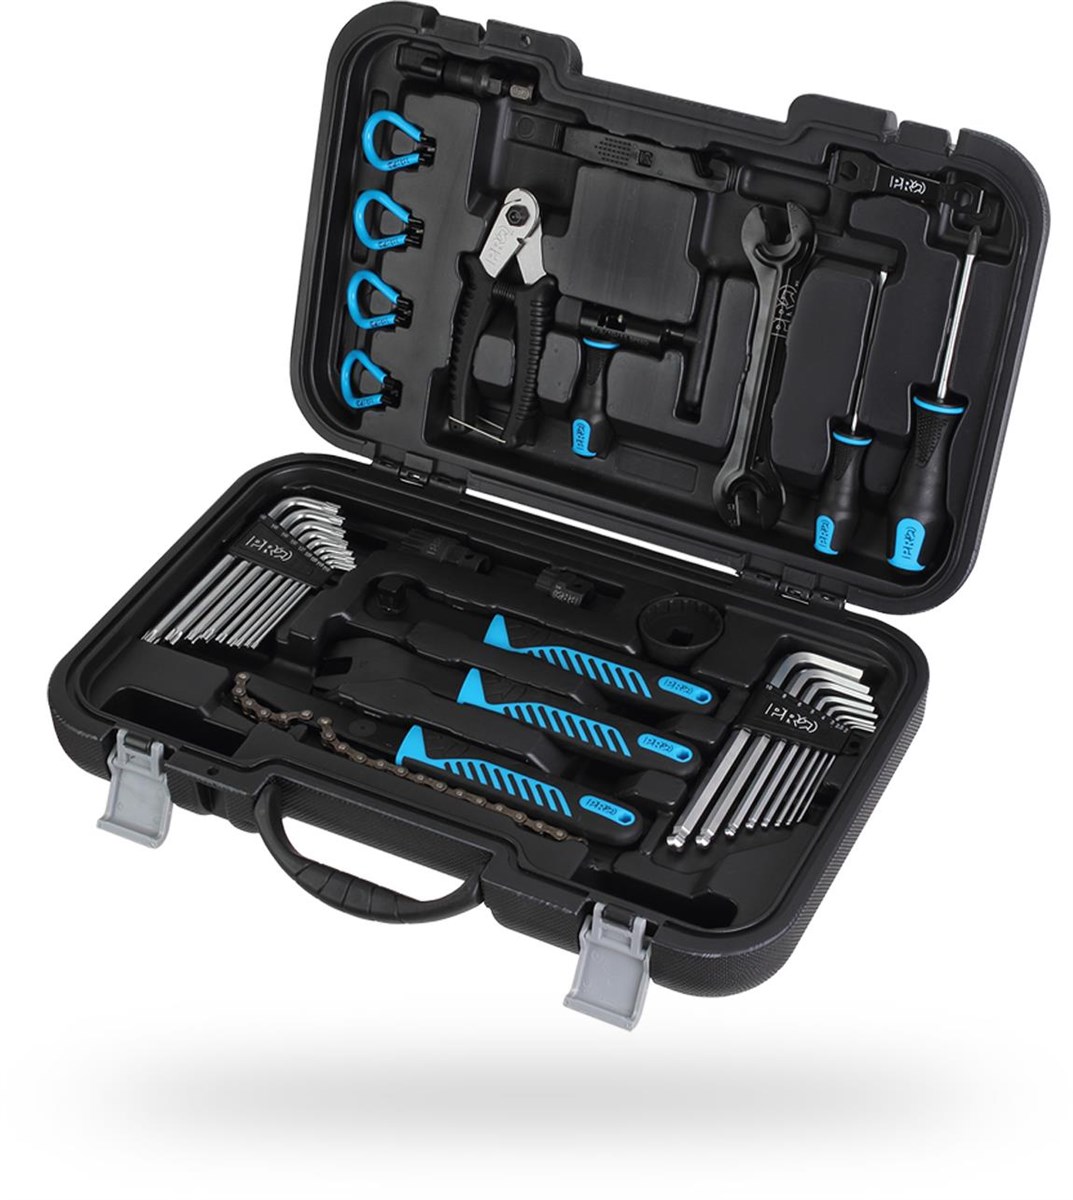 Pro Professional Hardcase Tool Box product image